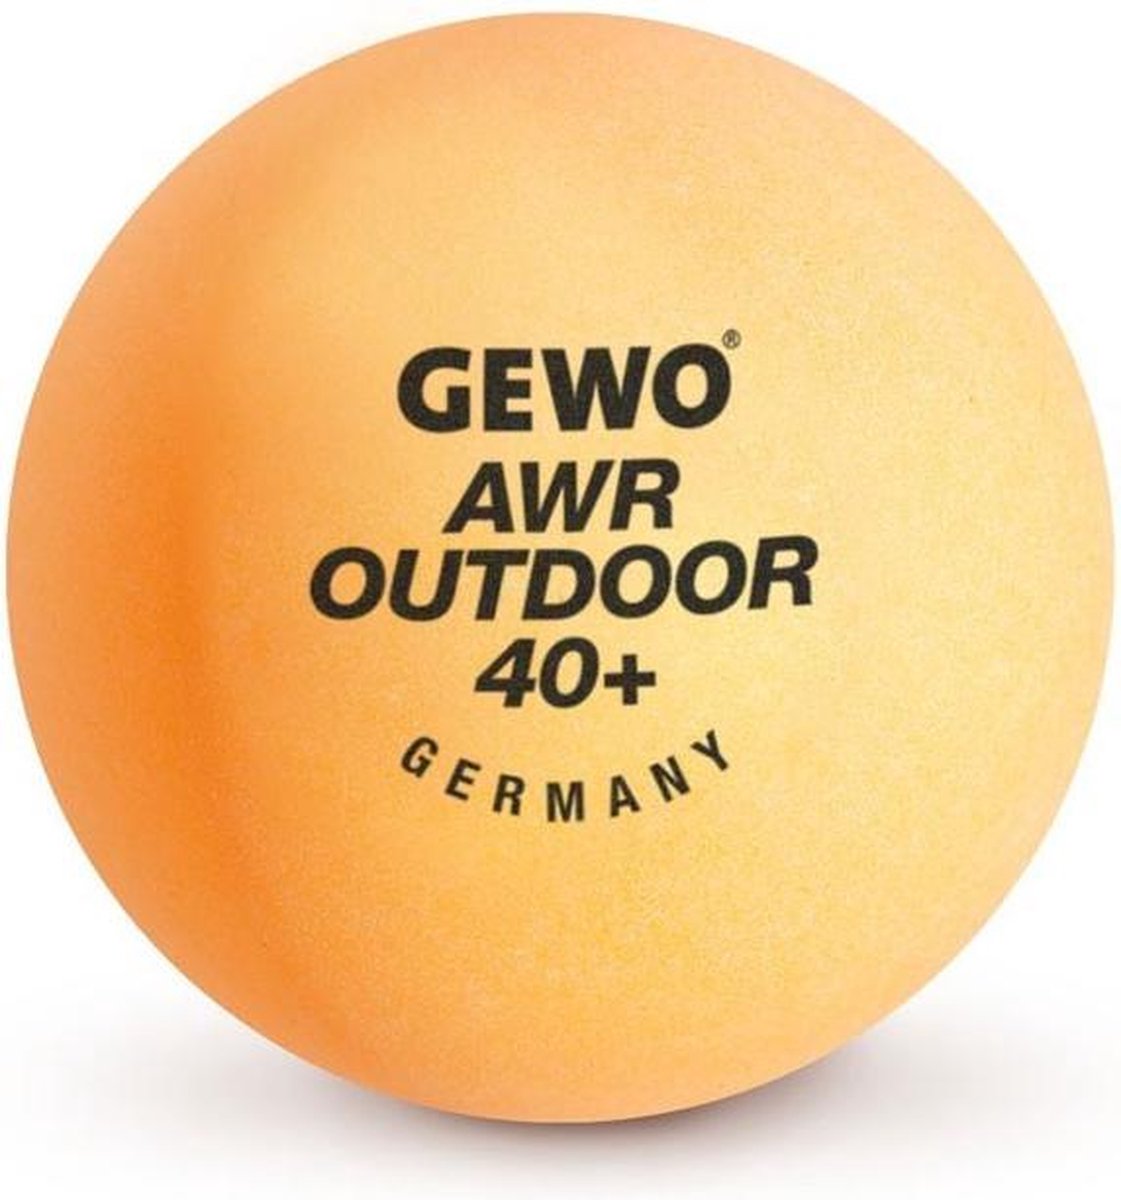 Gewo Tafeltennisballen AWR Outdoor 40+ - box van 6 ballen - Oranje - Ping Pong Ballen